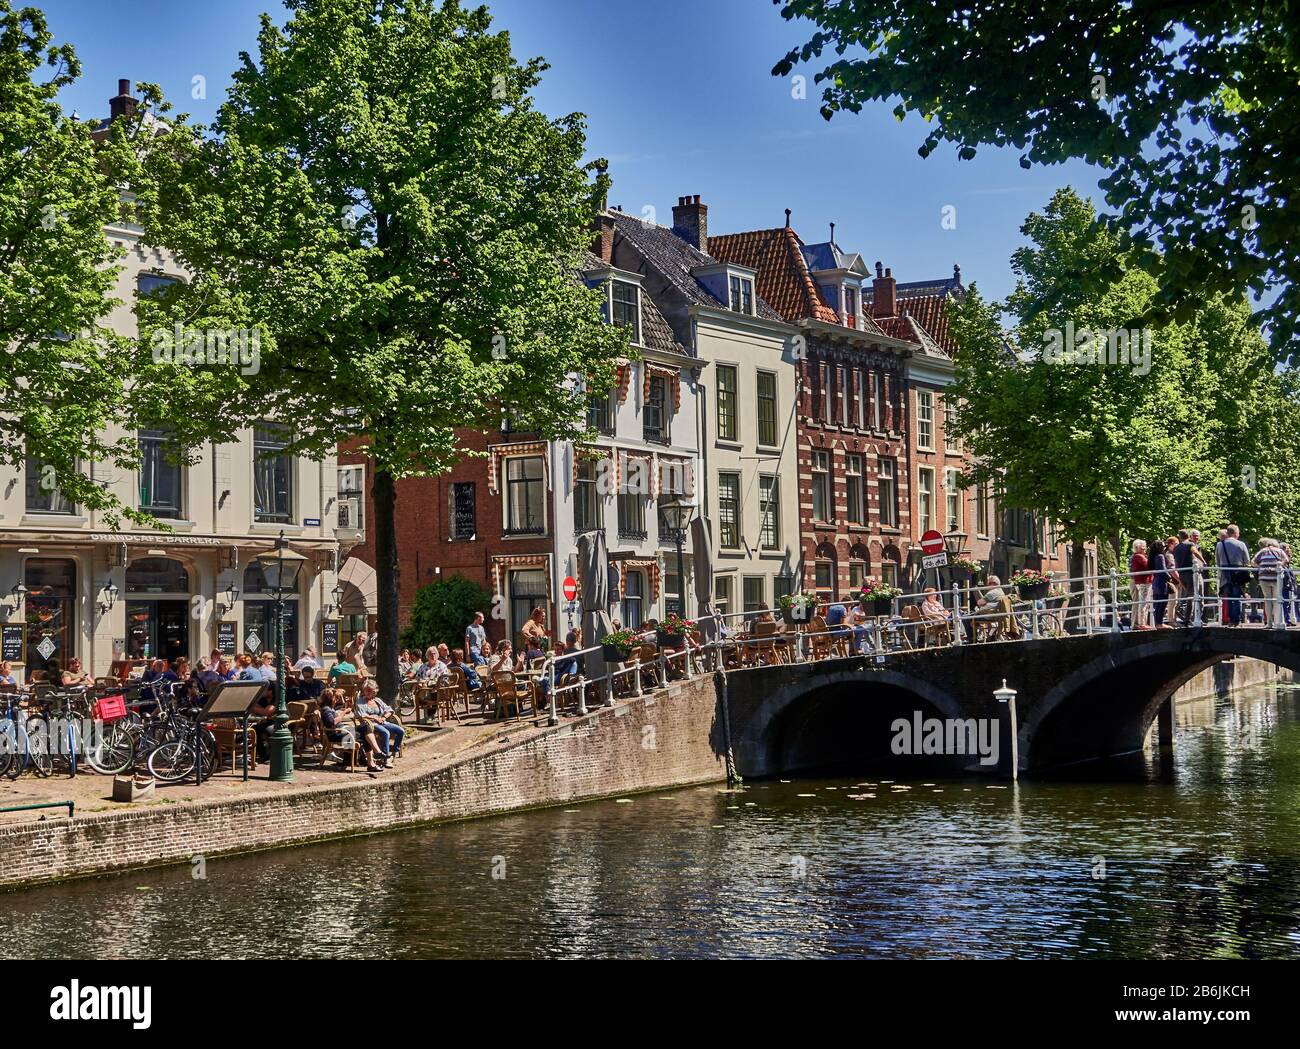 Die Stadt Leiden, Provinzland Südholland, Niederlande, Europa, die Menschen entspannen sich entlang des holländischen Kanals Rapenburg im historischen Zentrum von Leiden, die Stadt Leiden ist bekannt für ihre säkulare Architektur, seine Kanäle, seine Universitof 1590, die nativitof Rembrand, Die Stadt, in der die erste Tulpe Europas im 16. Jahrhundert geblüht wurde Stockfoto